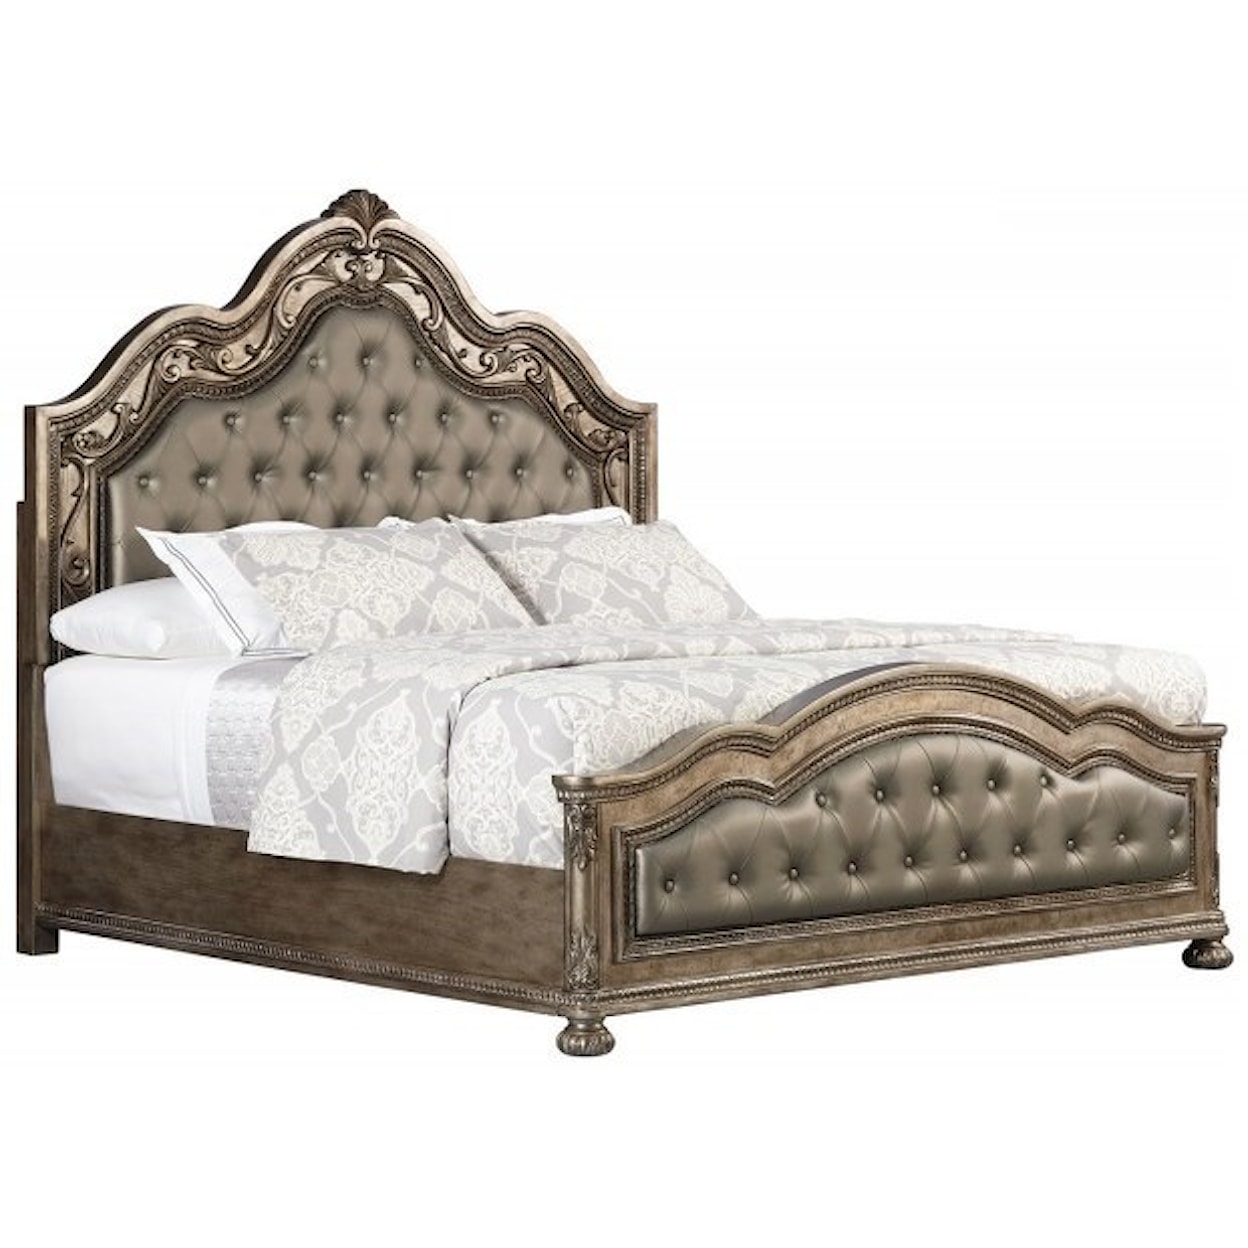 Avalon Furniture Seville Glamorous King Bed